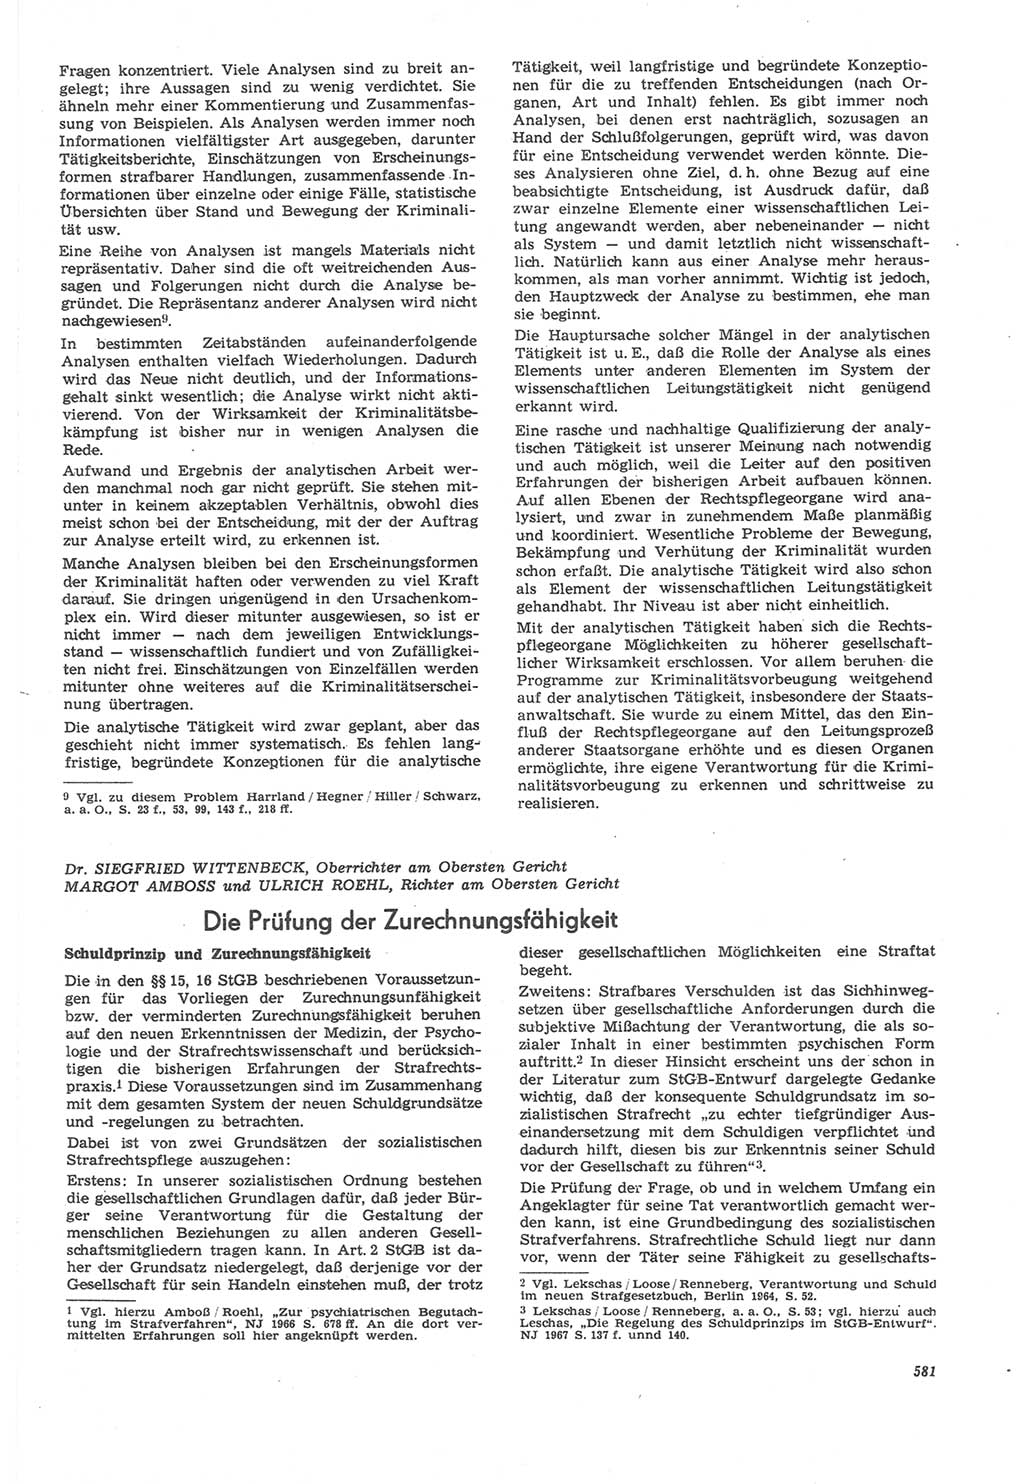 Neue Justiz (NJ), Zeitschrift für Recht und Rechtswissenschaft [Deutsche Demokratische Republik (DDR)], 22. Jahrgang 1968, Seite 581 (NJ DDR 1968, S. 581)